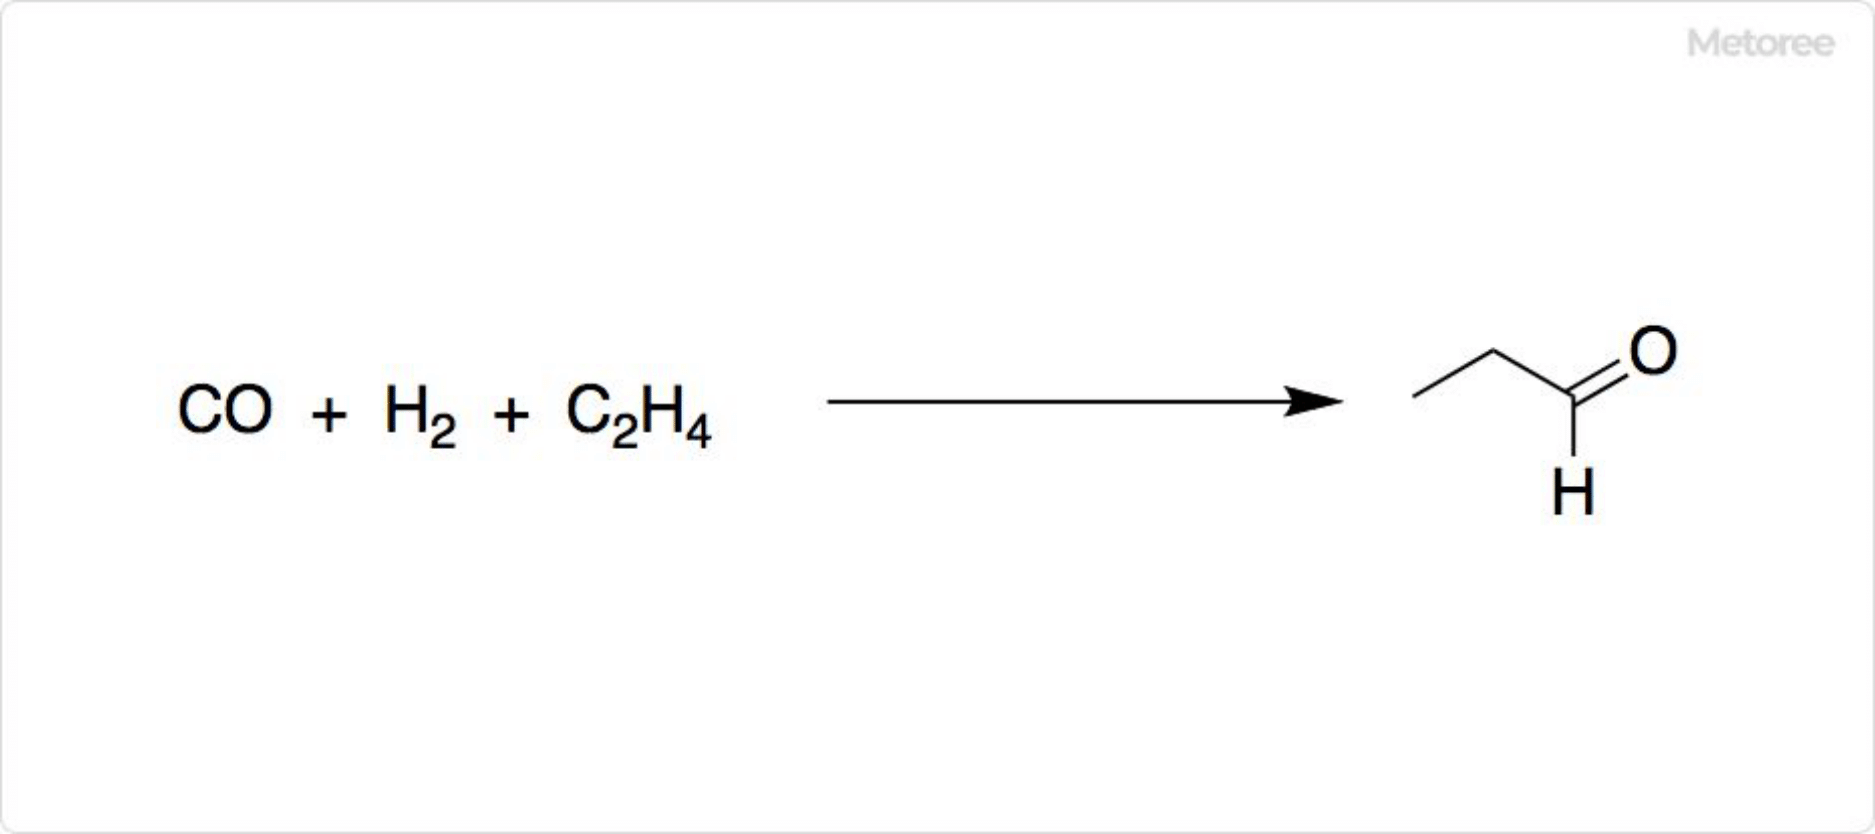 オキソ法によるプロピオンアルデヒドの合成